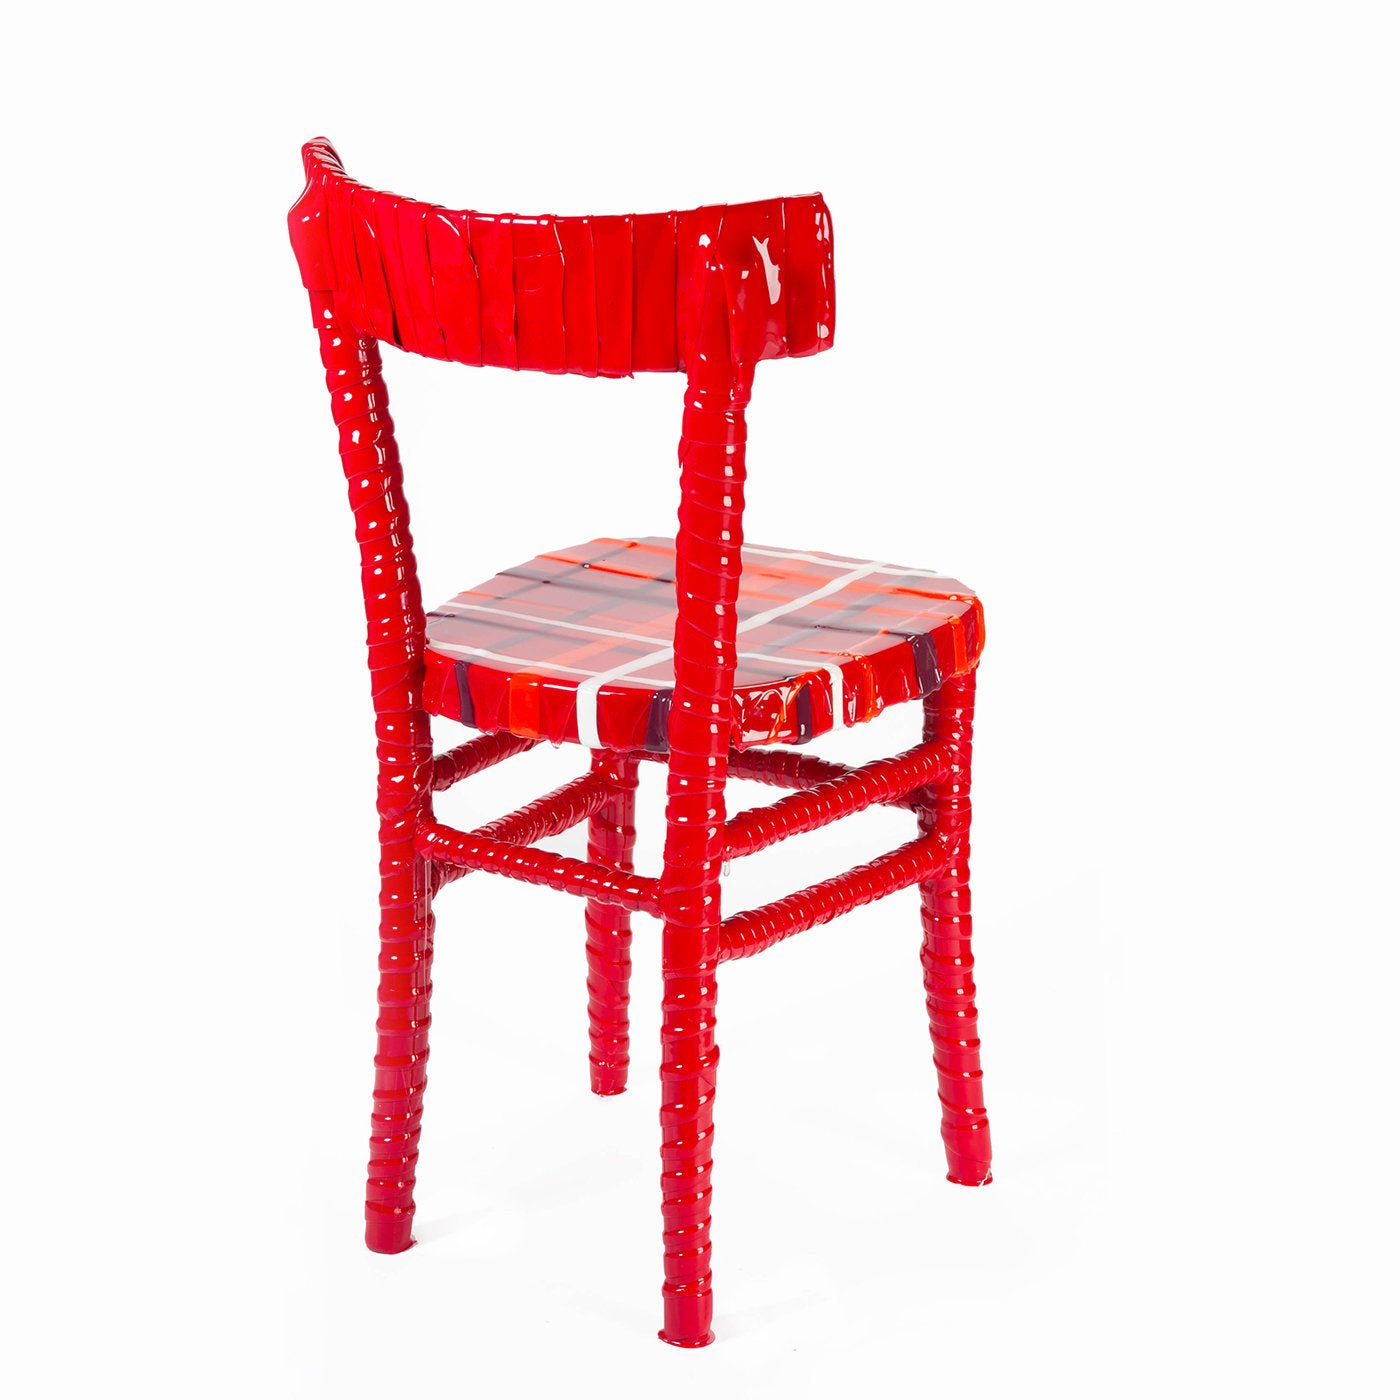 N. 02/20 Chaise unique en résine rouge rayée de Paola Navone - Vue alternative 1